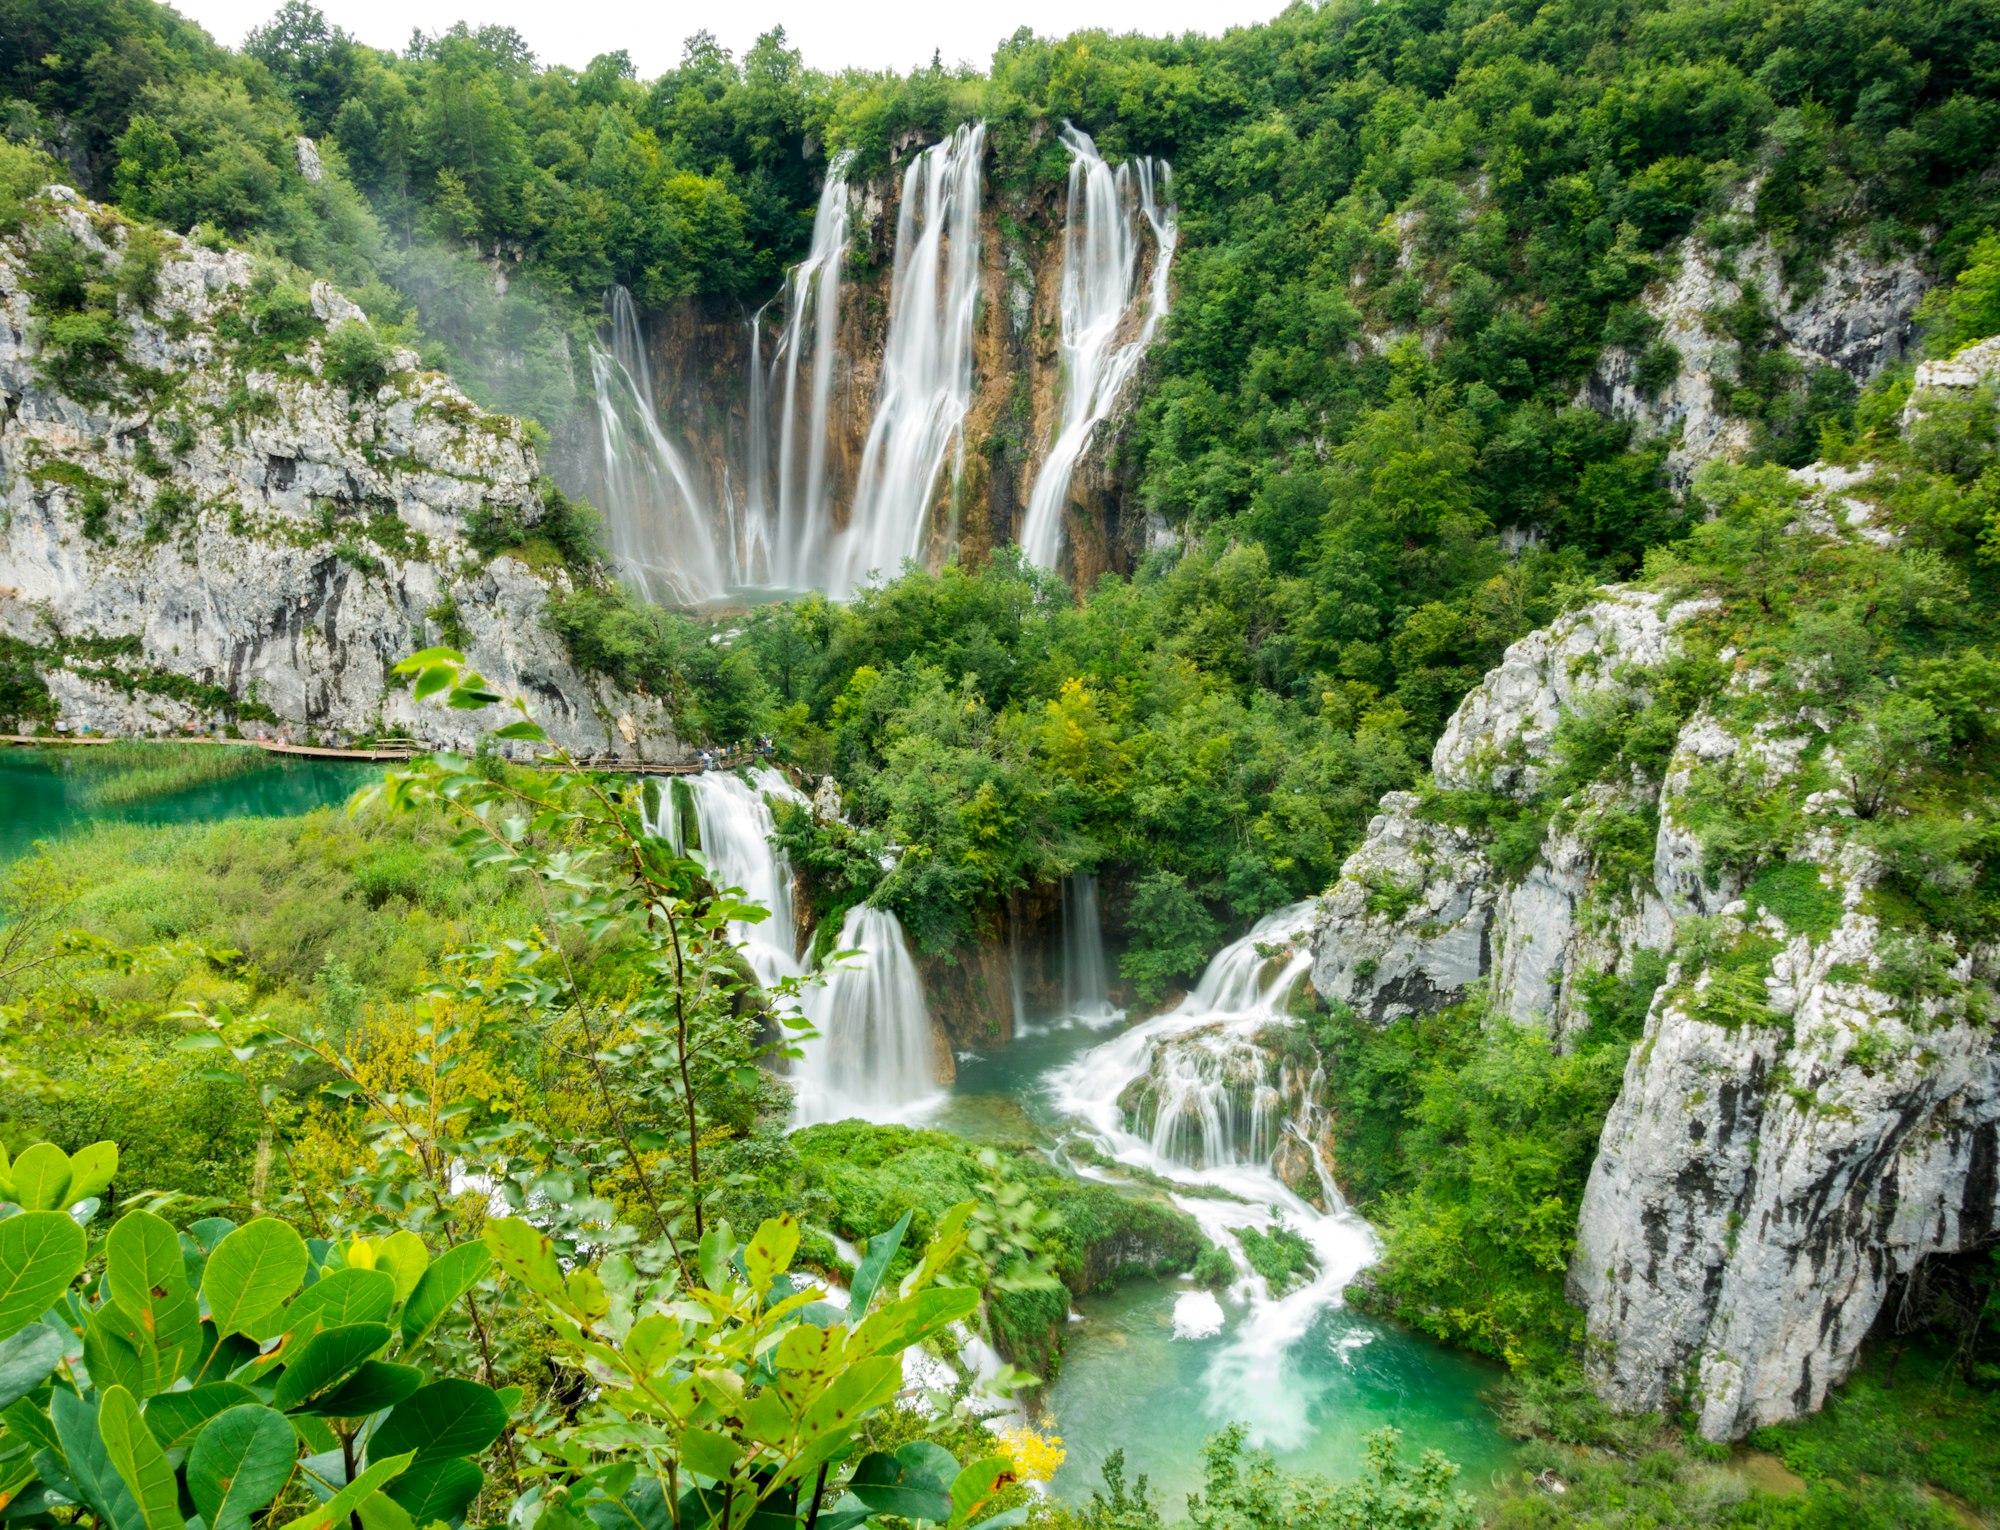 Bezoek de Plitvice Meren in Kroatië + tips en route